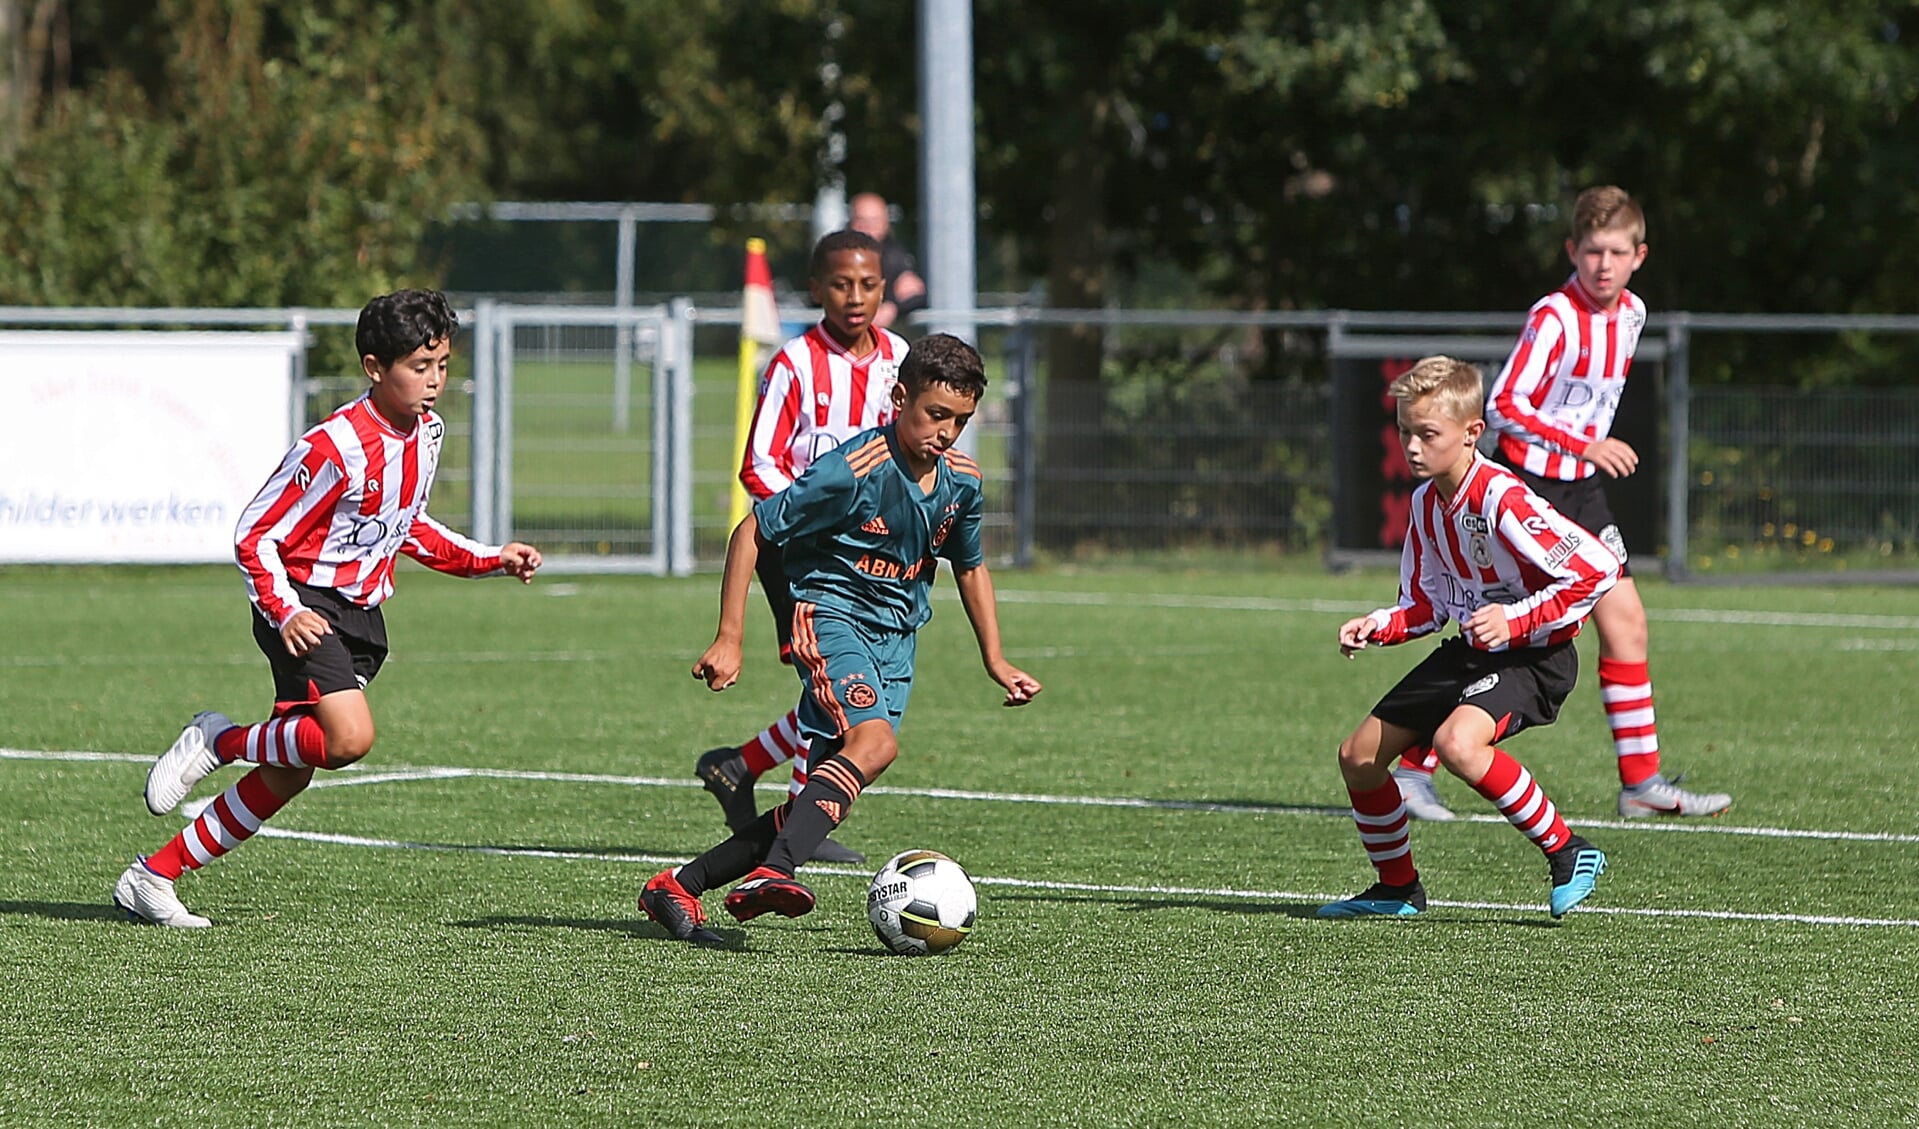 Nu al is te zien, dat de jongens van de topclubs over veel talent beschikken. Zo ook de voetballers van Ajax en Sparta. 